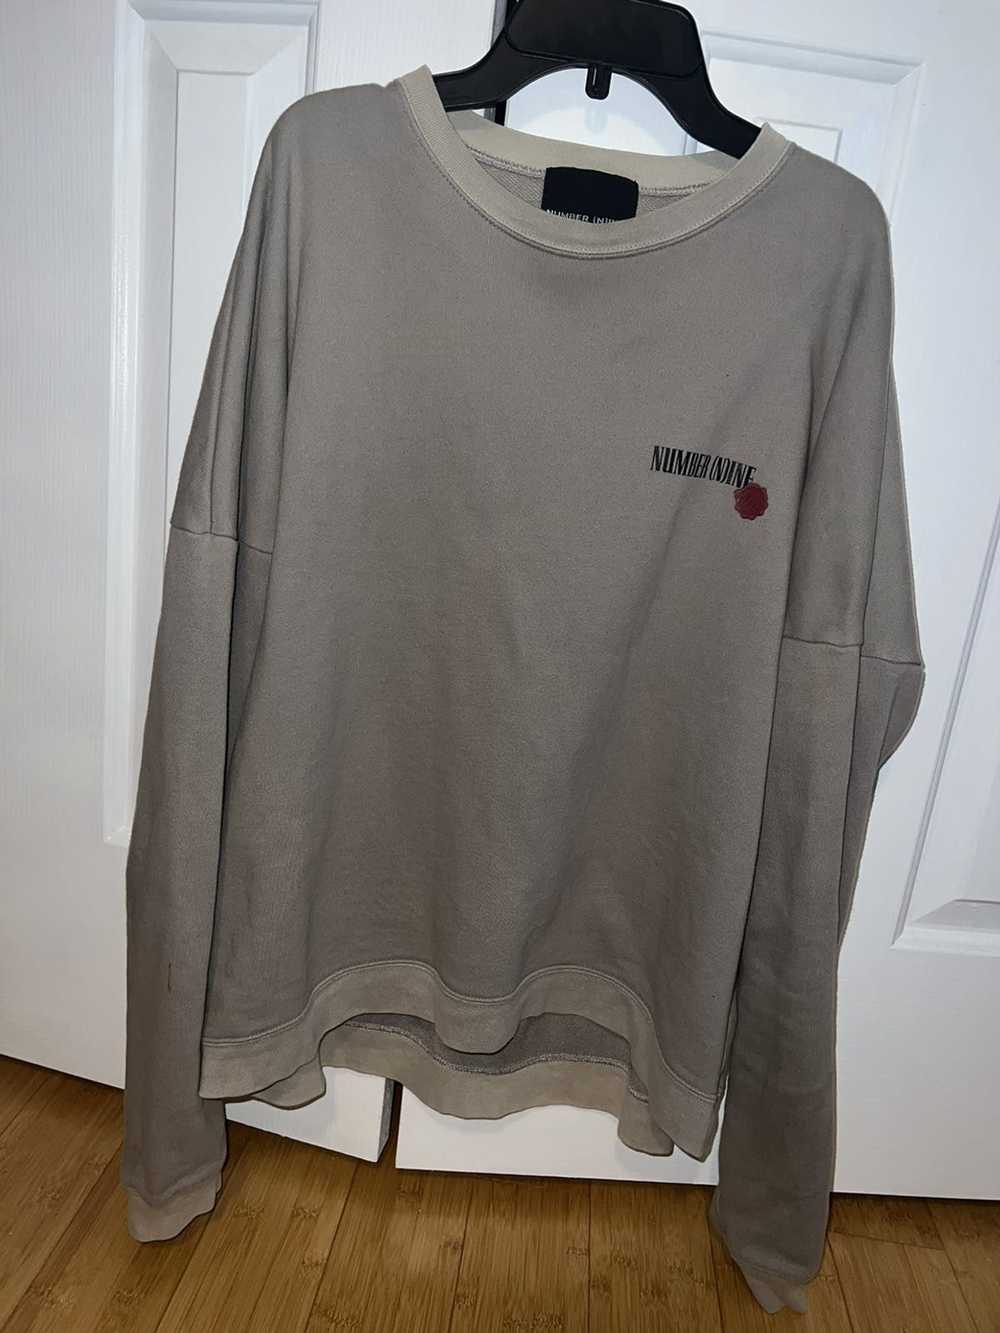 Number (N)ine Number (N)ine Grey Sweater - image 2